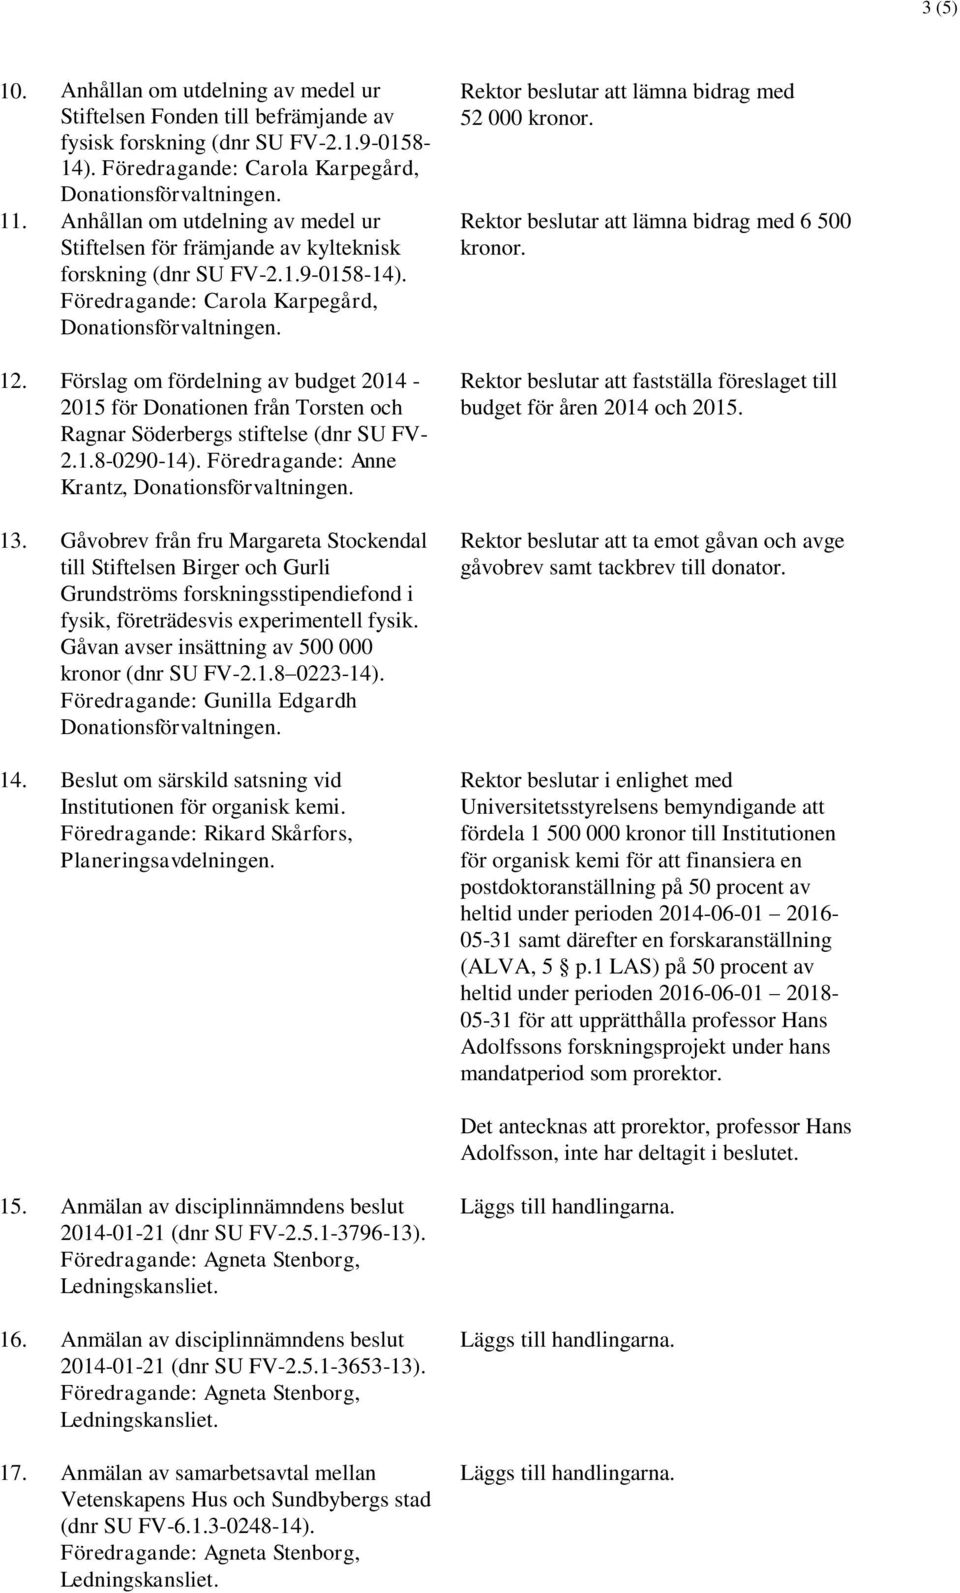 Förslag om fördelning av budget 2014-2015 för Donationen från Torsten och Ragnar Söderbergs stiftelse (dnr SU FV- 2.1.8-0290-14). Föredragande: Anne Krantz, 13.